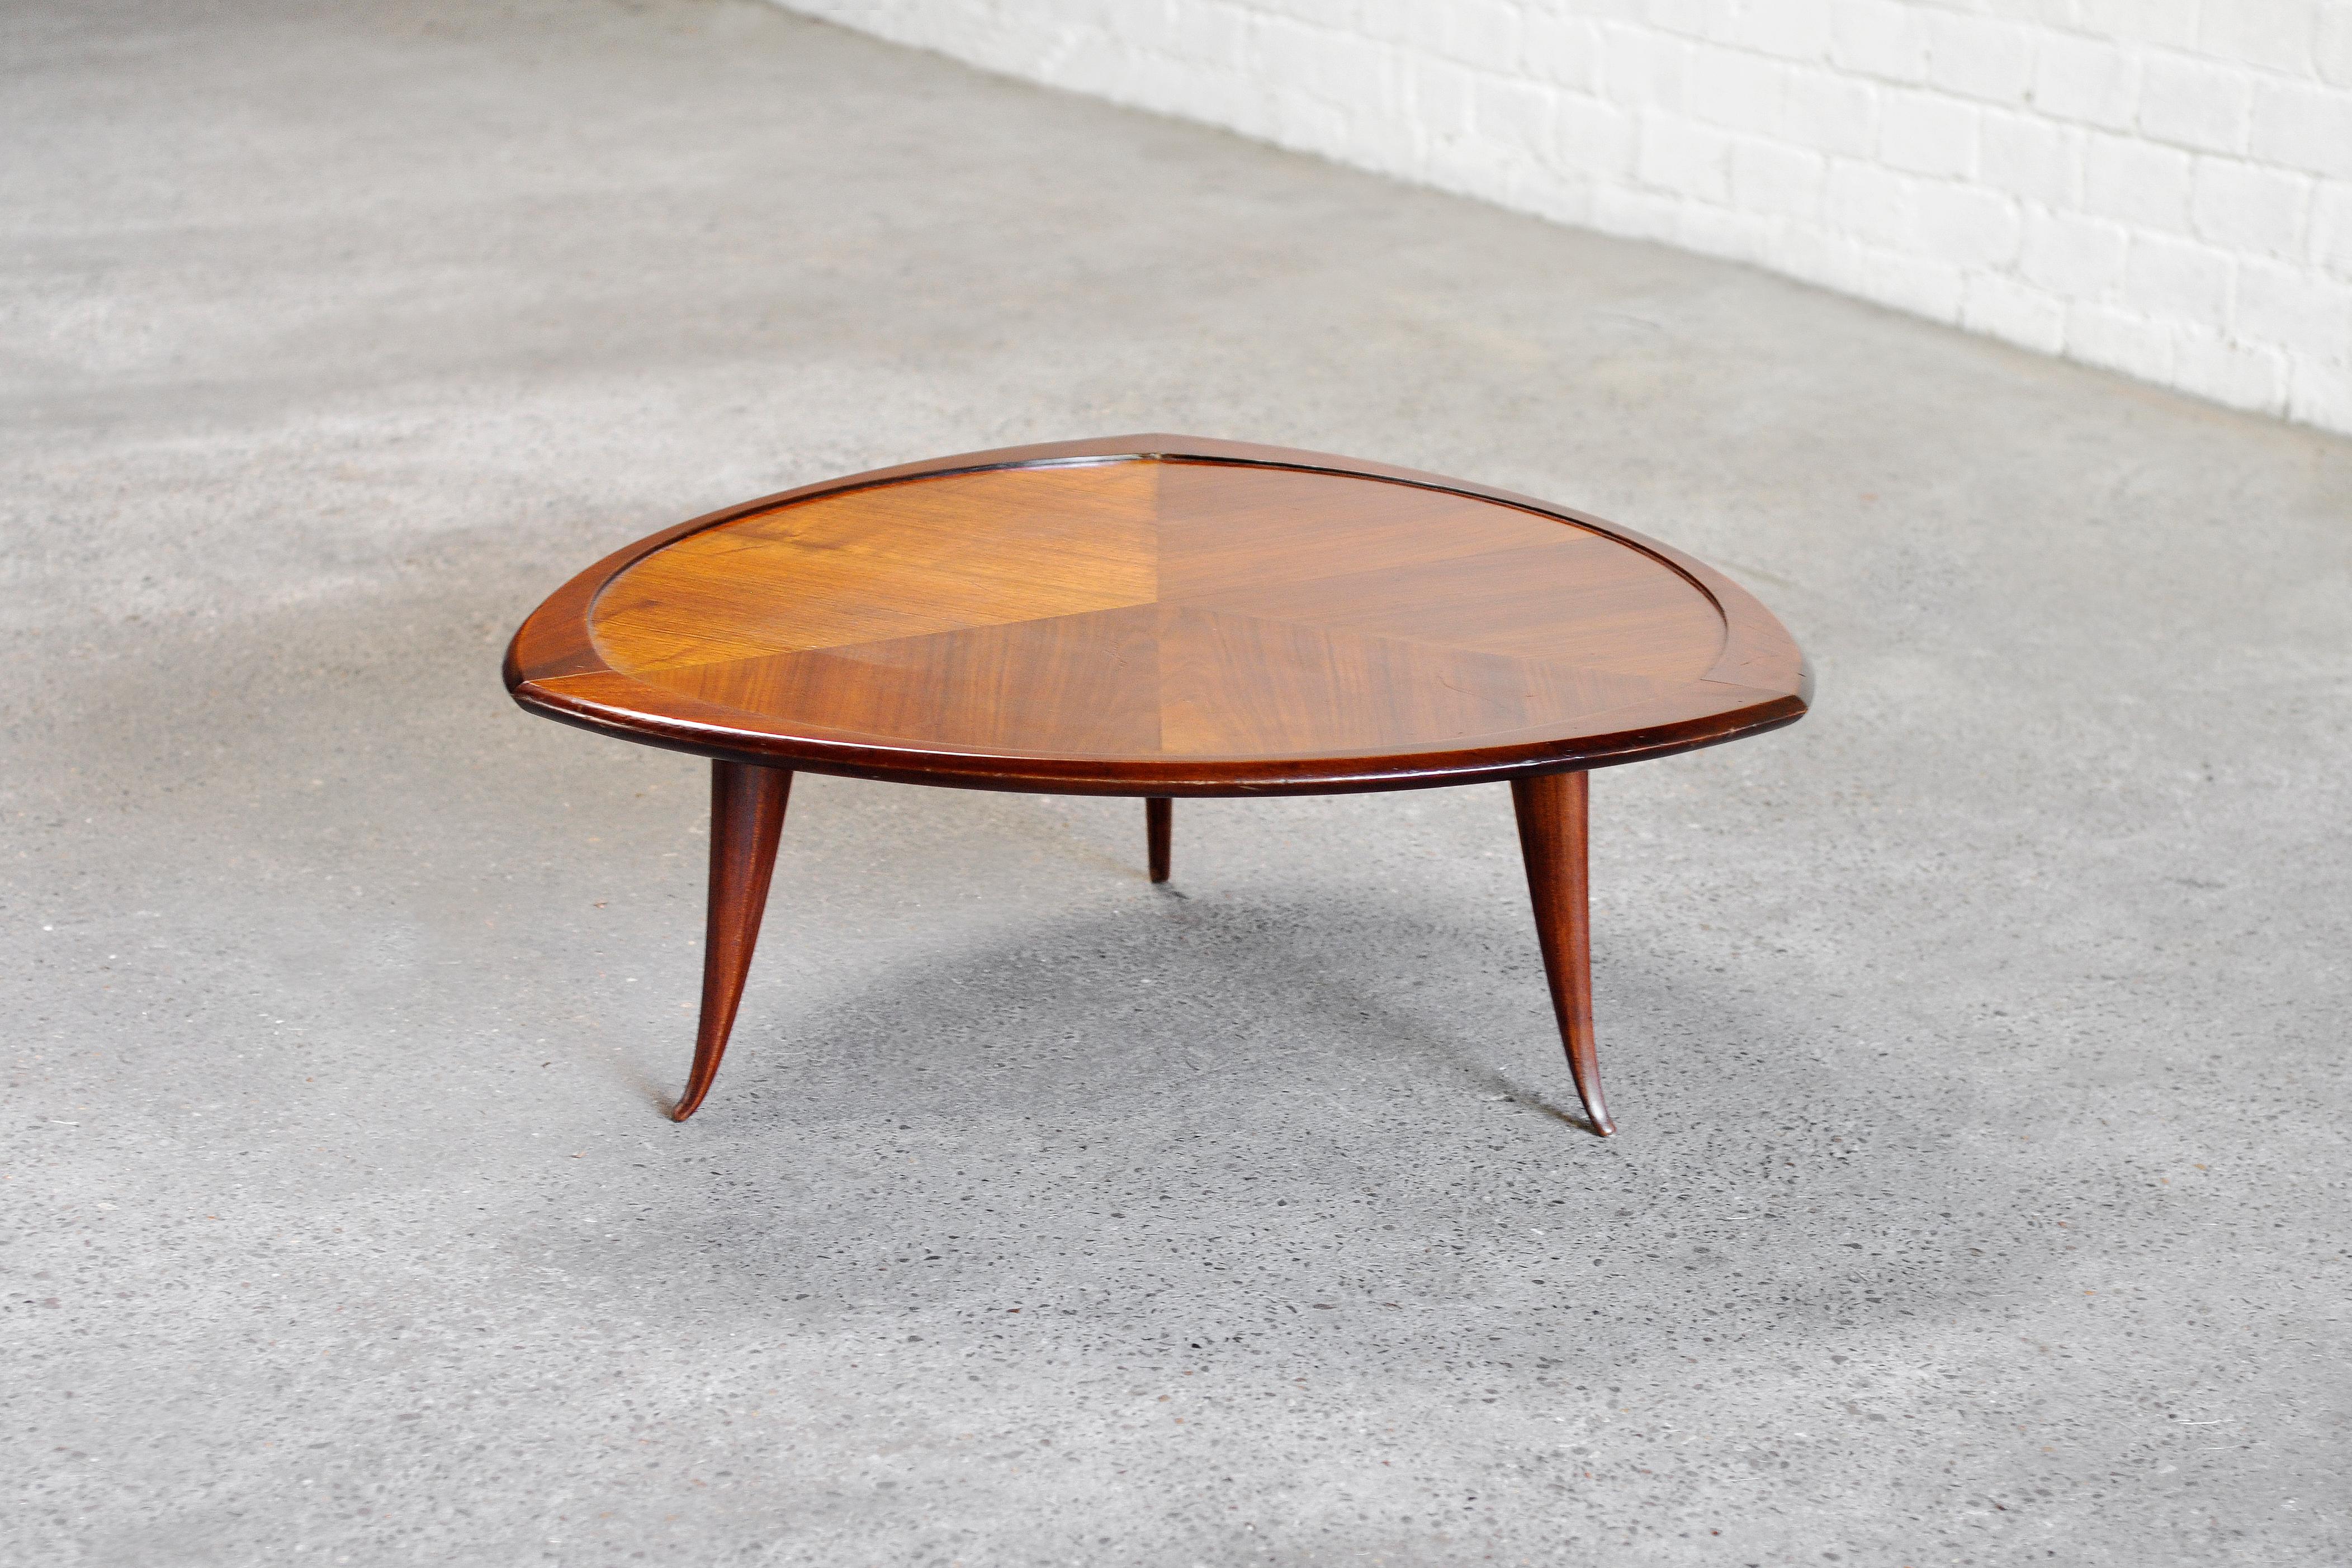 Ein italienischer Designer-Couchtisch aus den 1960er Jahren, gefertigt aus einer Mischung verschiedener Holzarten. Dank seiner markanten und einzigartig geformten Tischplatte strahlt dieser Tisch eine dekorative und einzigartige Ästhetik aus. Die